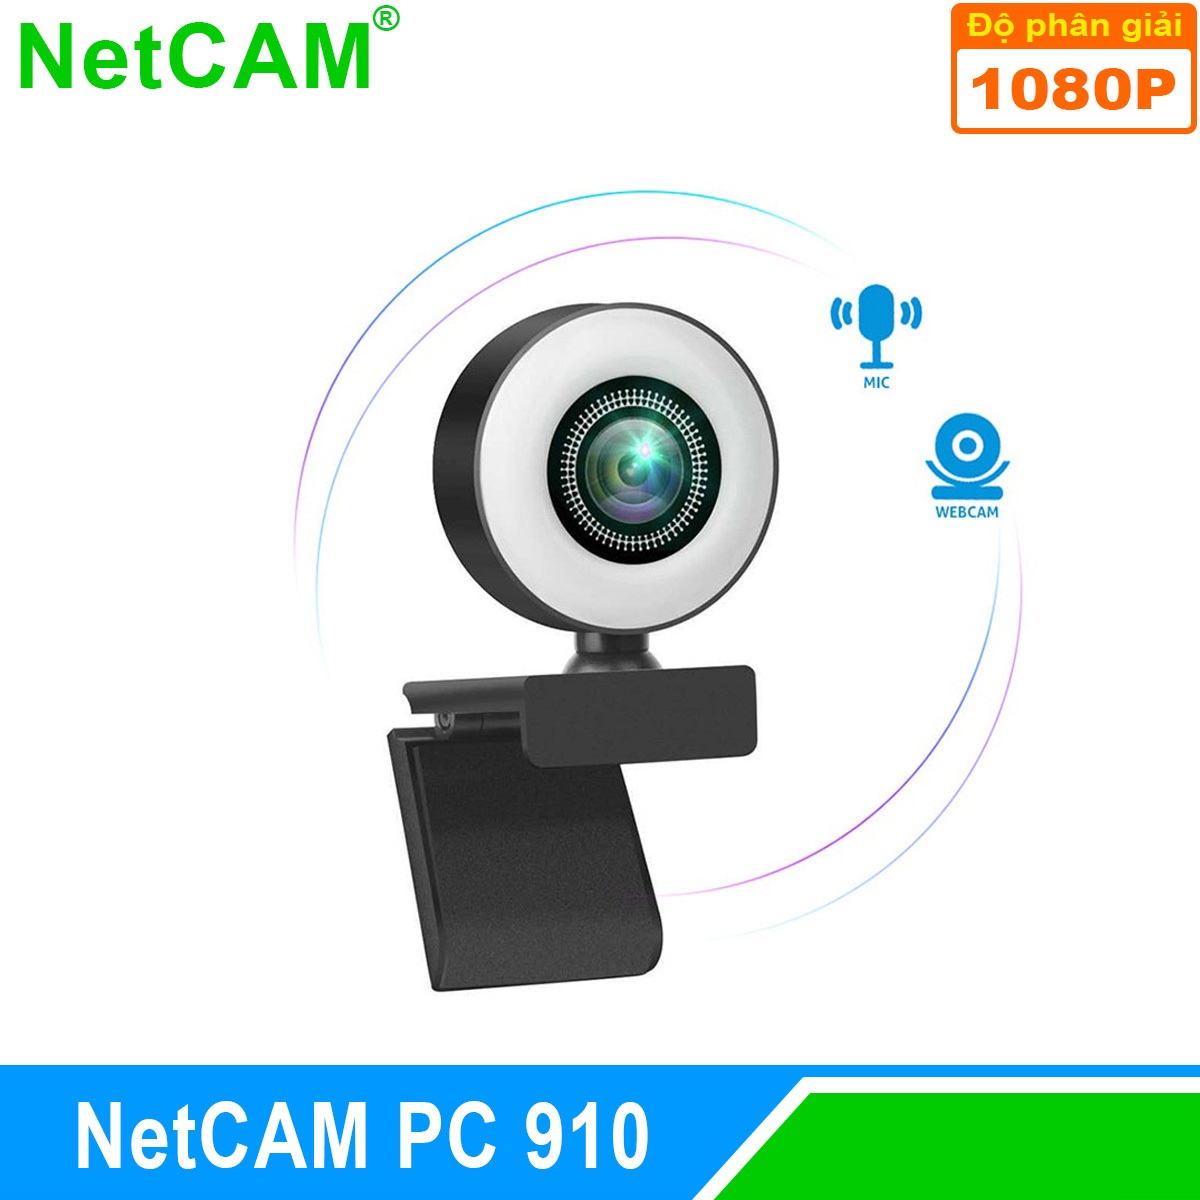 Webcam NetCAM PC 910 độ phân giải 1080P - Hàng Chính Hãng